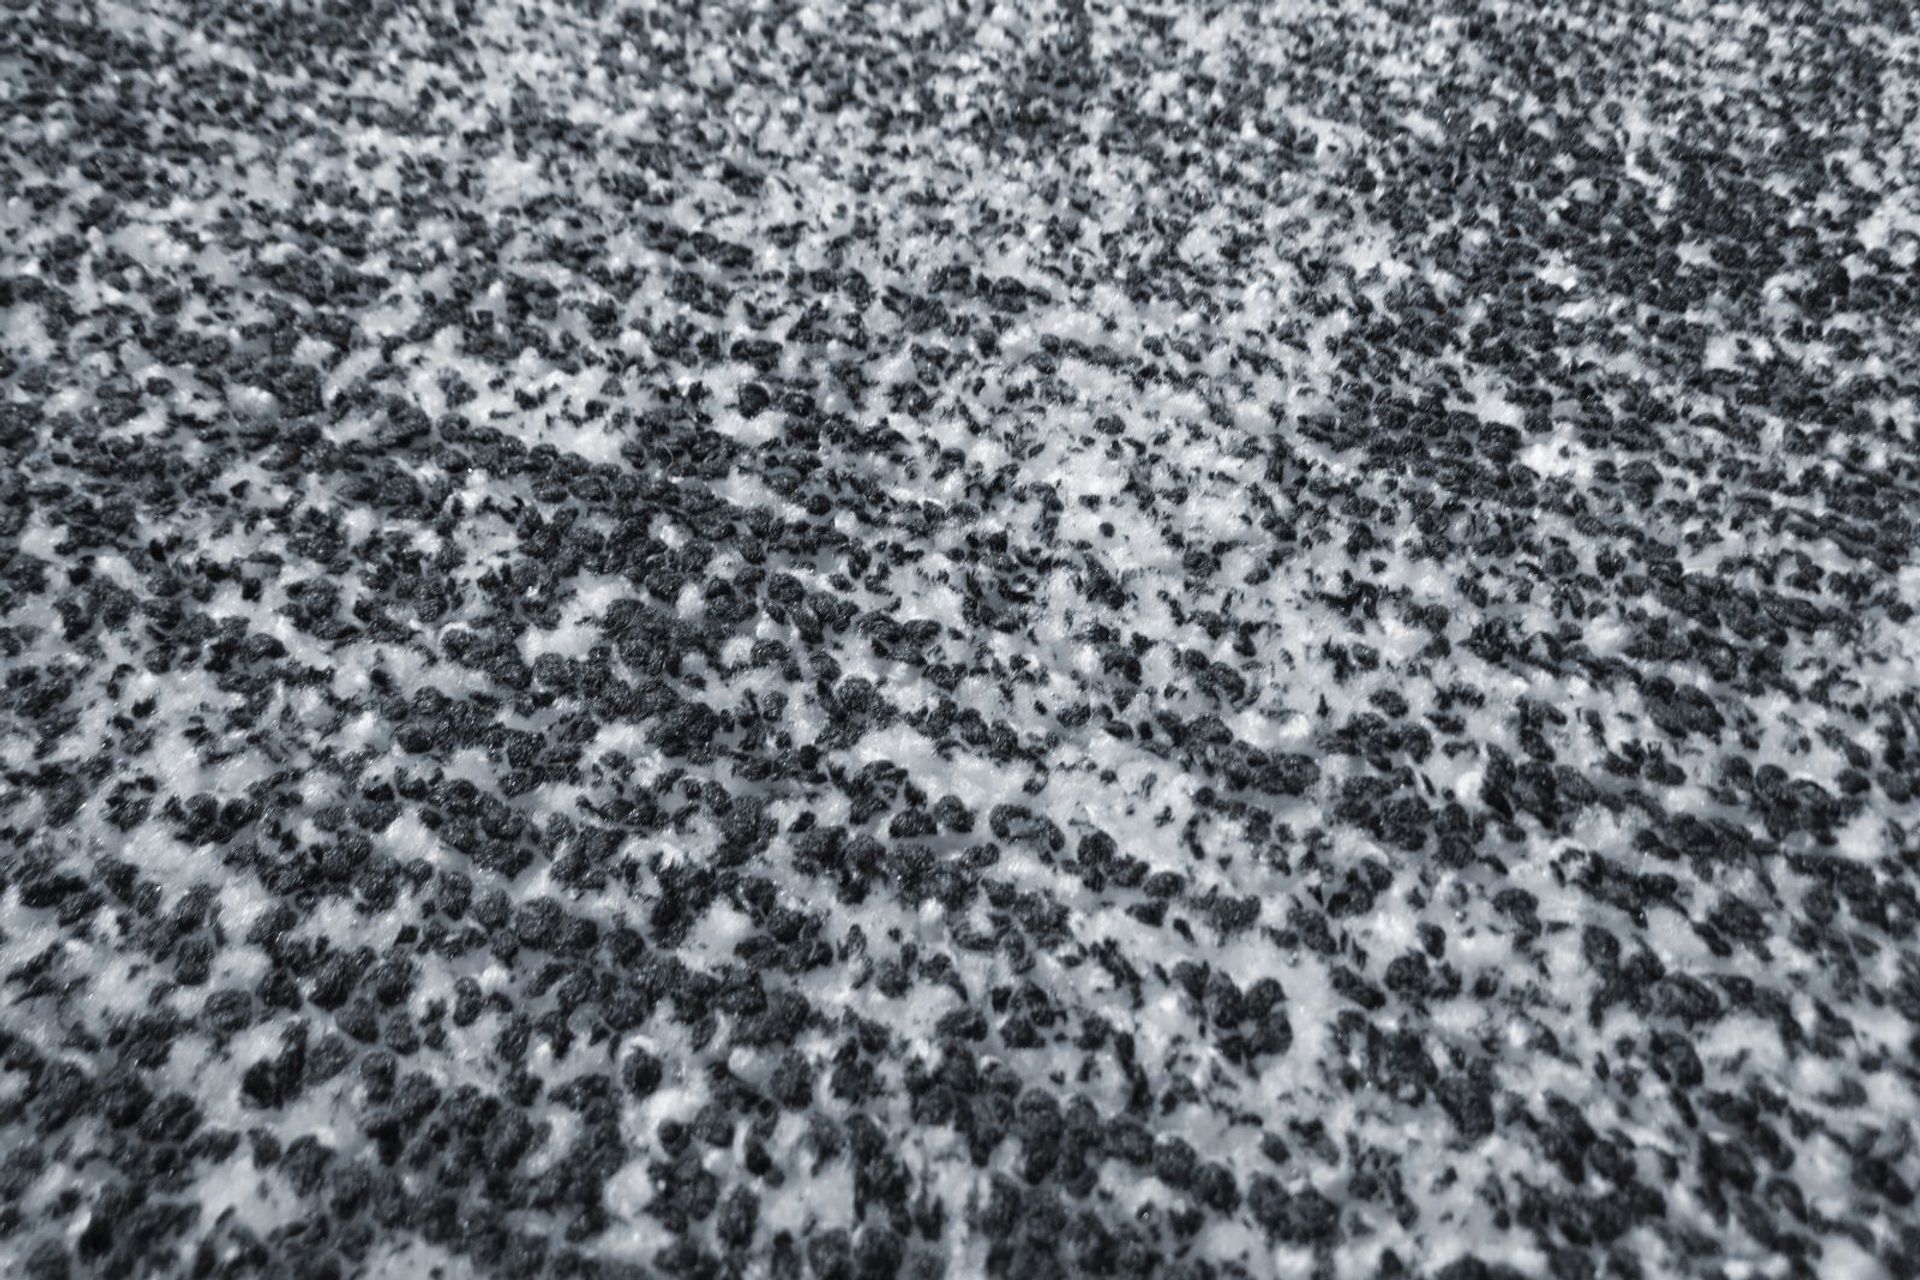 Teppich Etna 110 Hellblau 80 cm x 150 cm